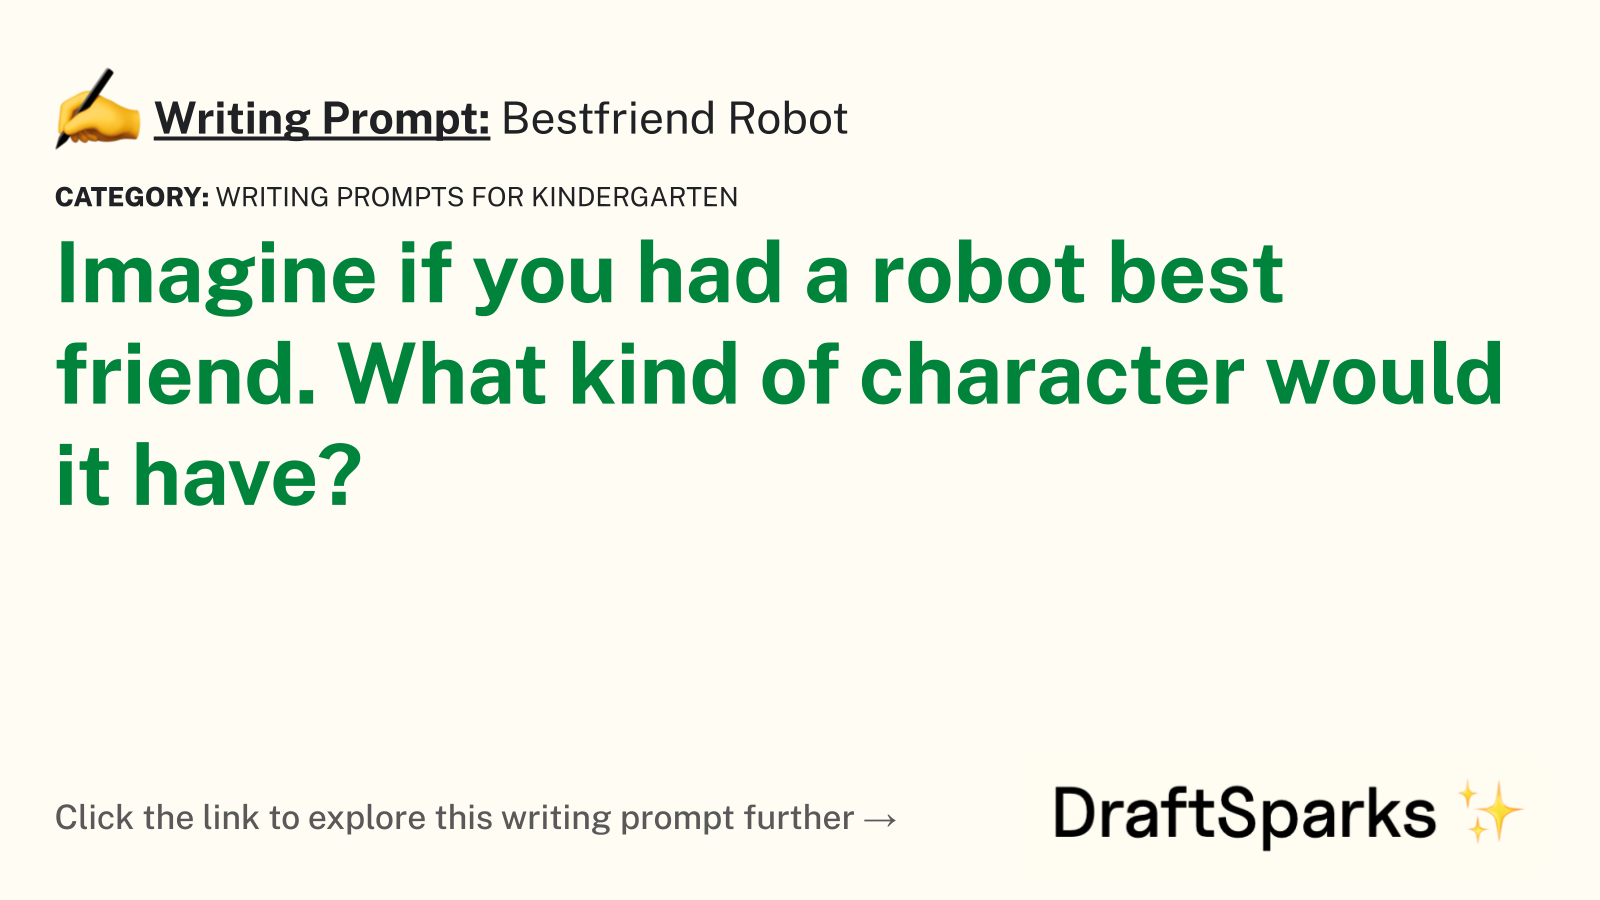 Bestfriend Robot